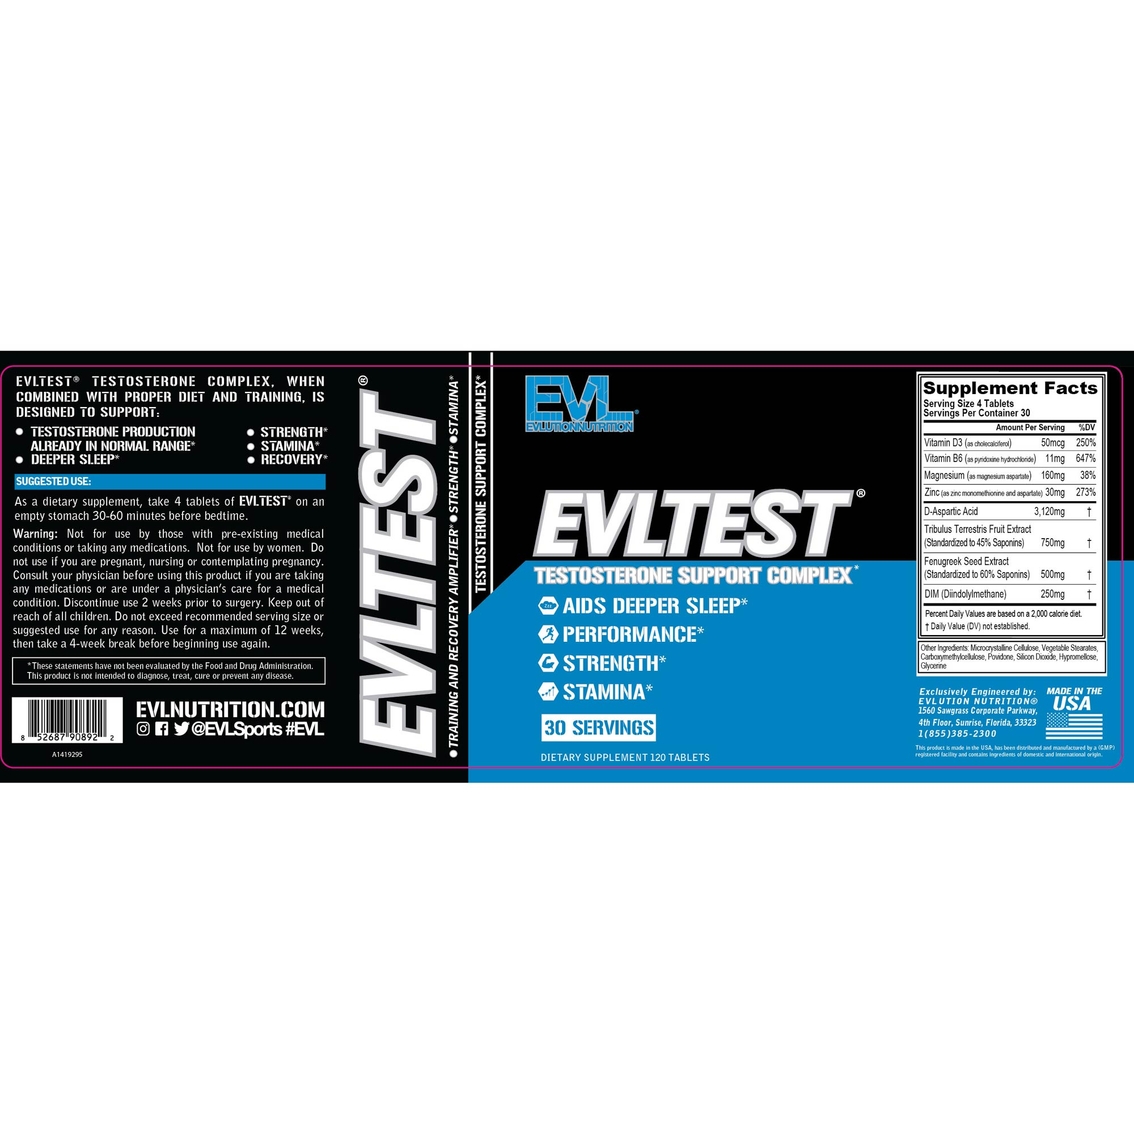 EVL Test Tablets 120 ct. - Image 2 of 2